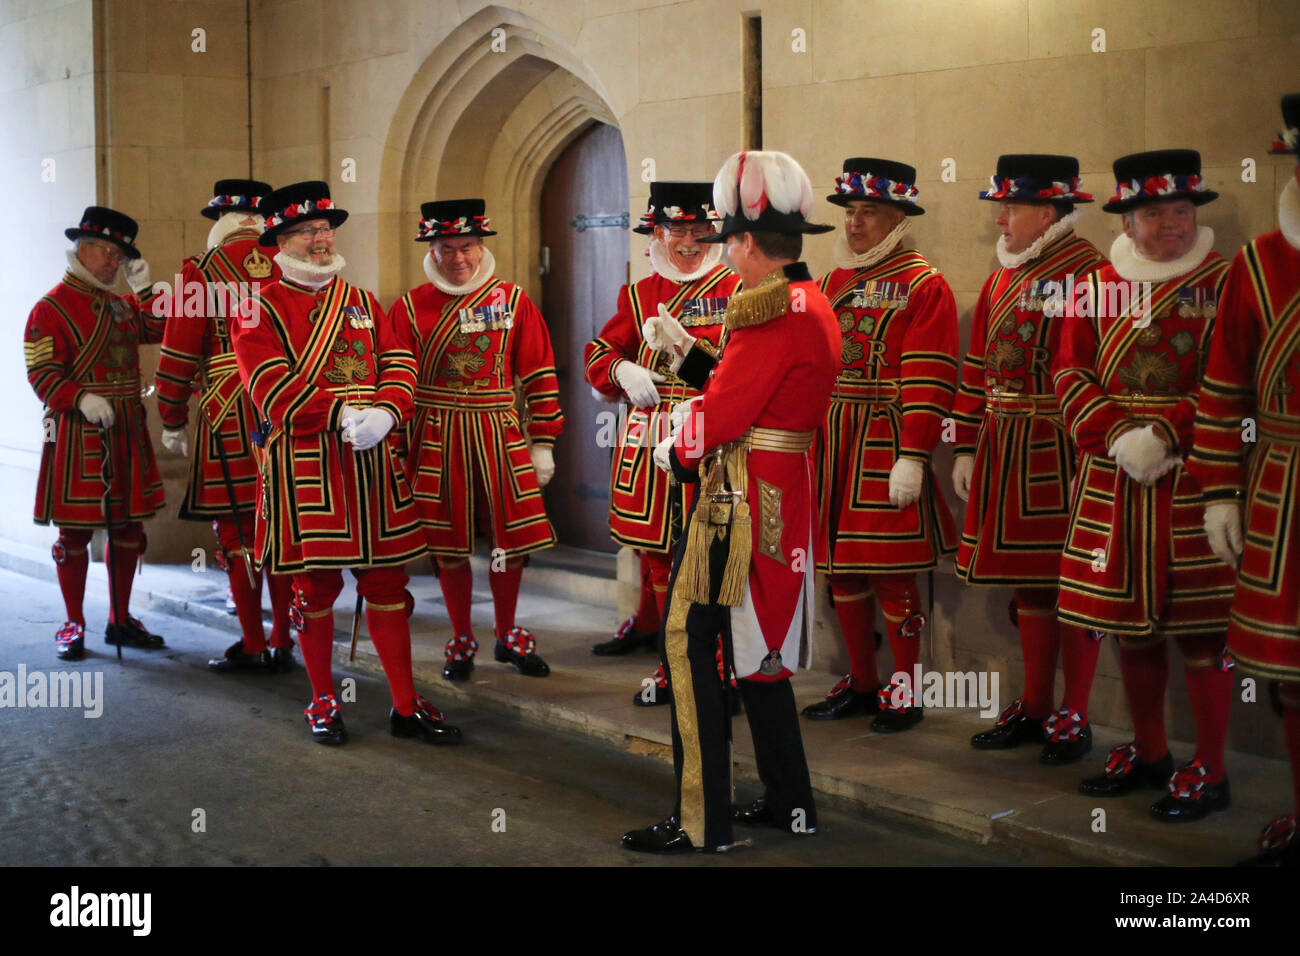 Mitglieder der Yeoman Wachmann am Eingang des Herrschers vor der von Königin Elizabeth II., im Oberhaus im Palast von Westminster in London. Stockfoto